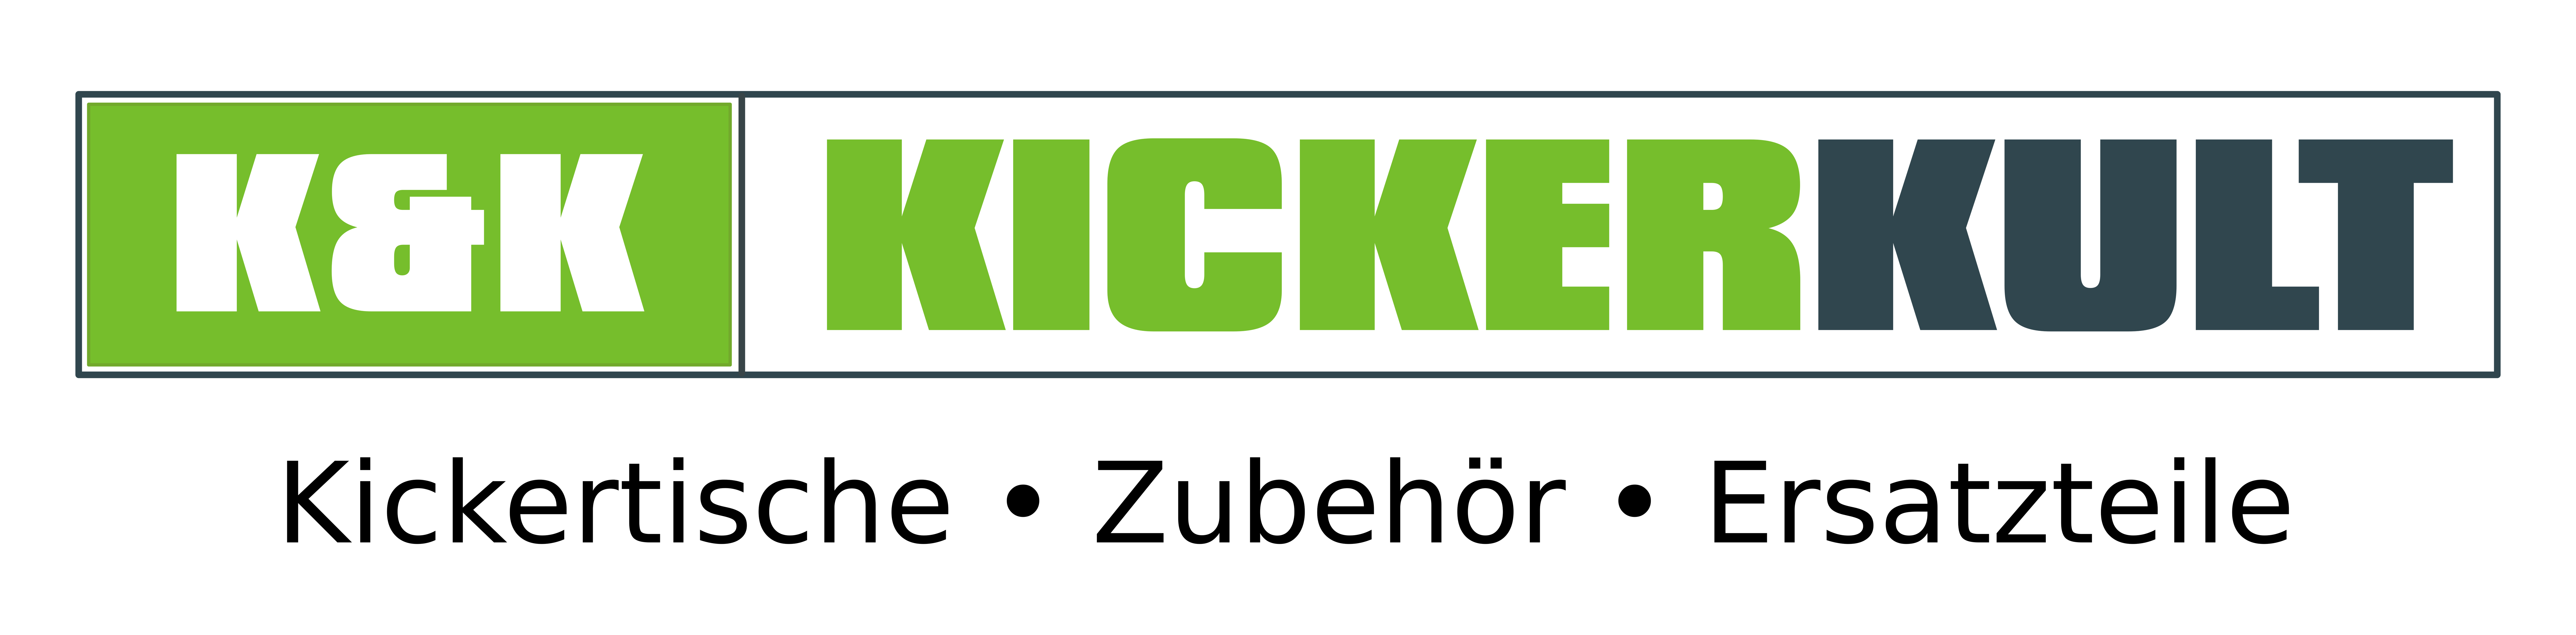 kickerkult-logo